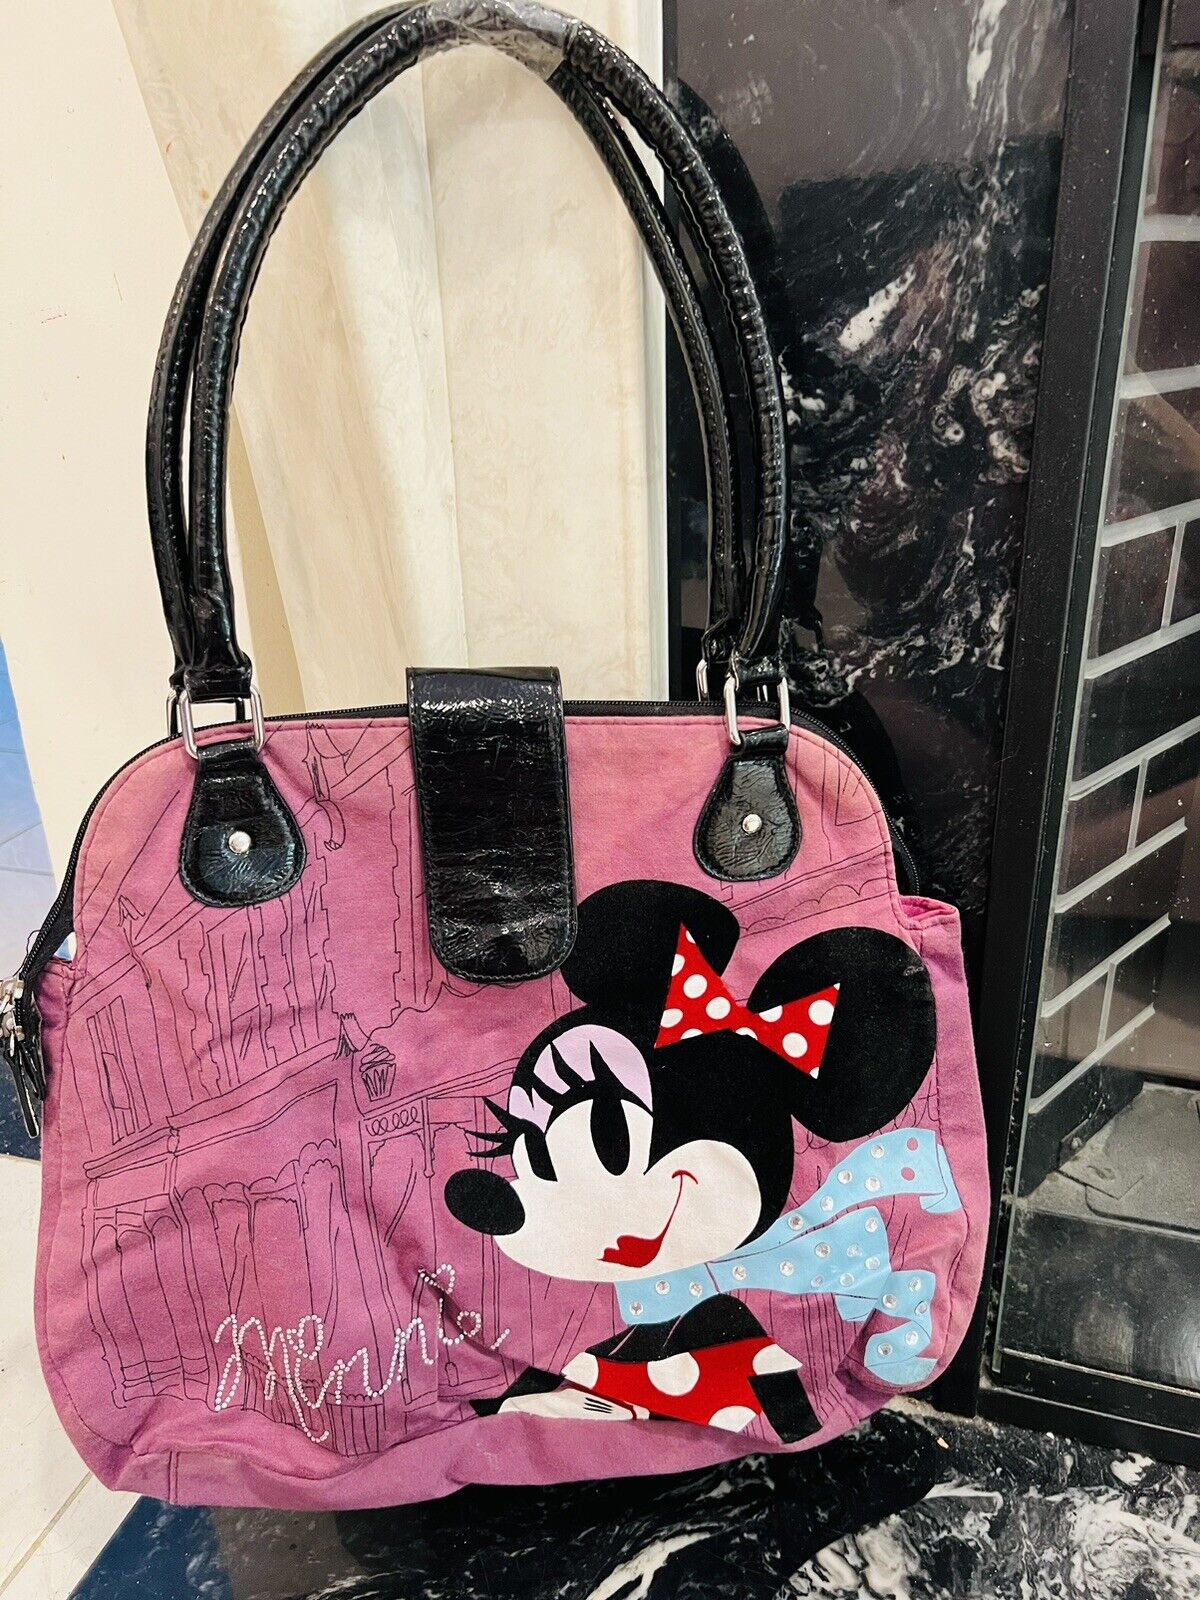 Disney’s - Minnie Mouse - “ Cest La Vie” “ That’s Life” - Bag